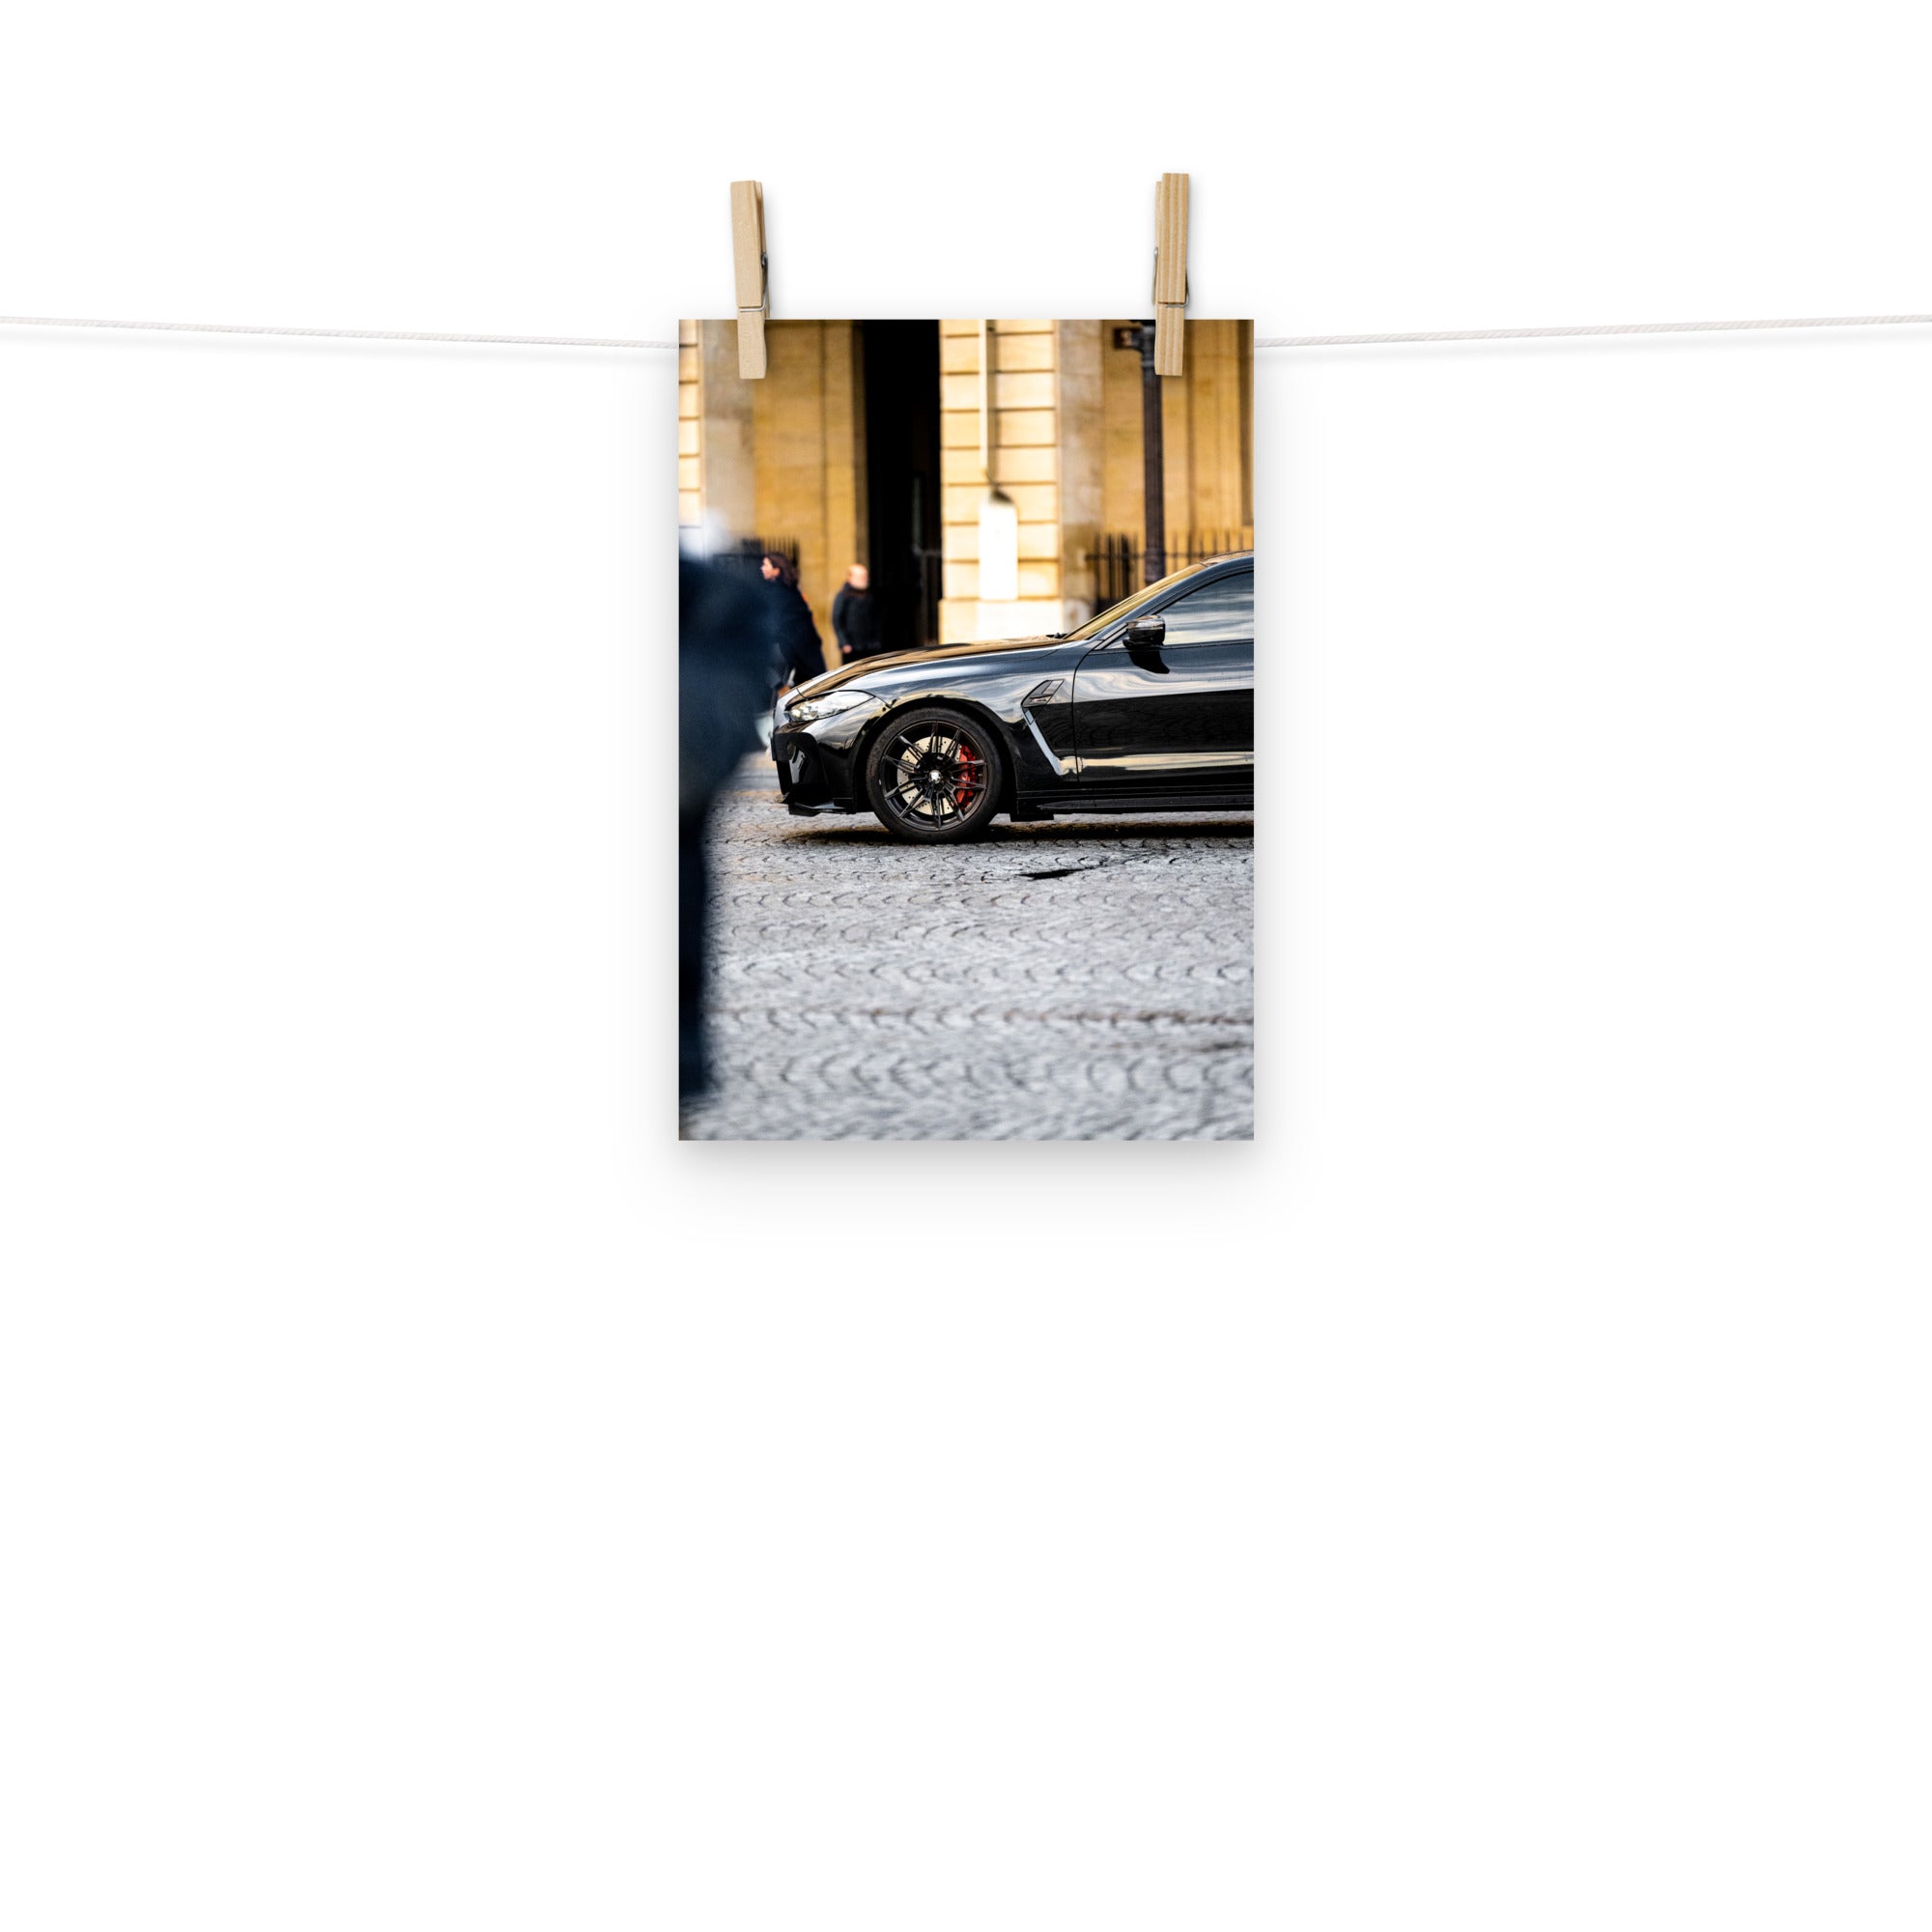 Poster mural - BMW M4 Compétition – Photographie de voiture – Poster photo, poster XXL, photographie murale et des posters muraux unique au monde. La boutique de posters créée par Yann Peccard un Photographe français.